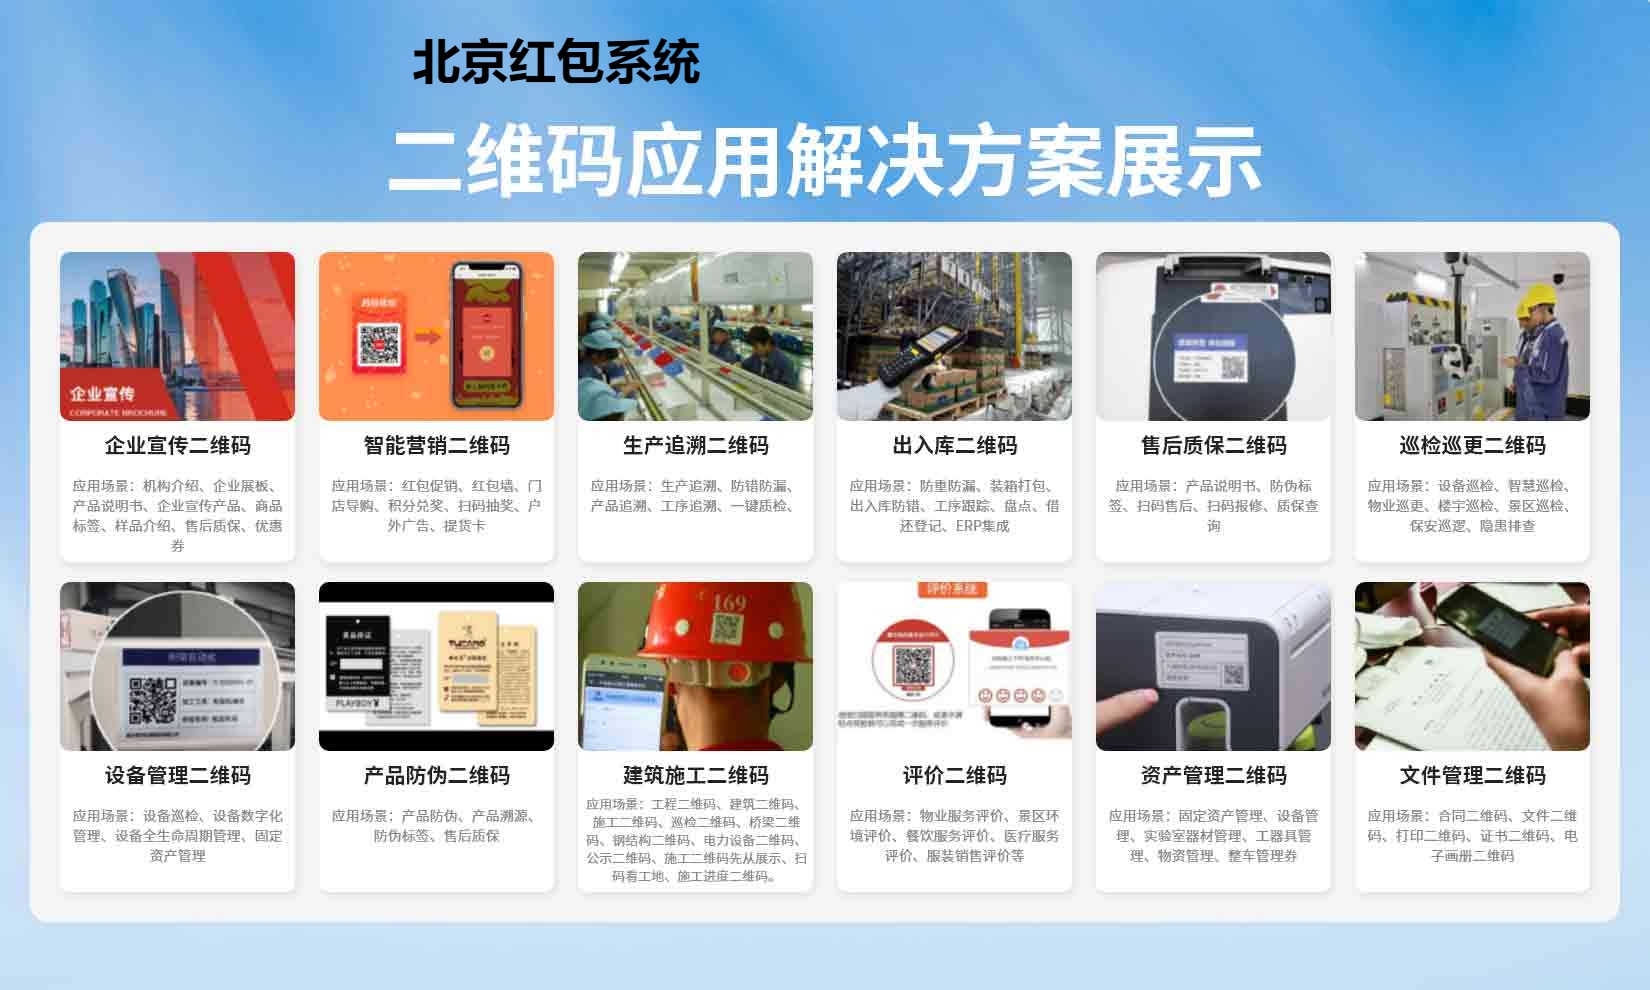 北京红包系统